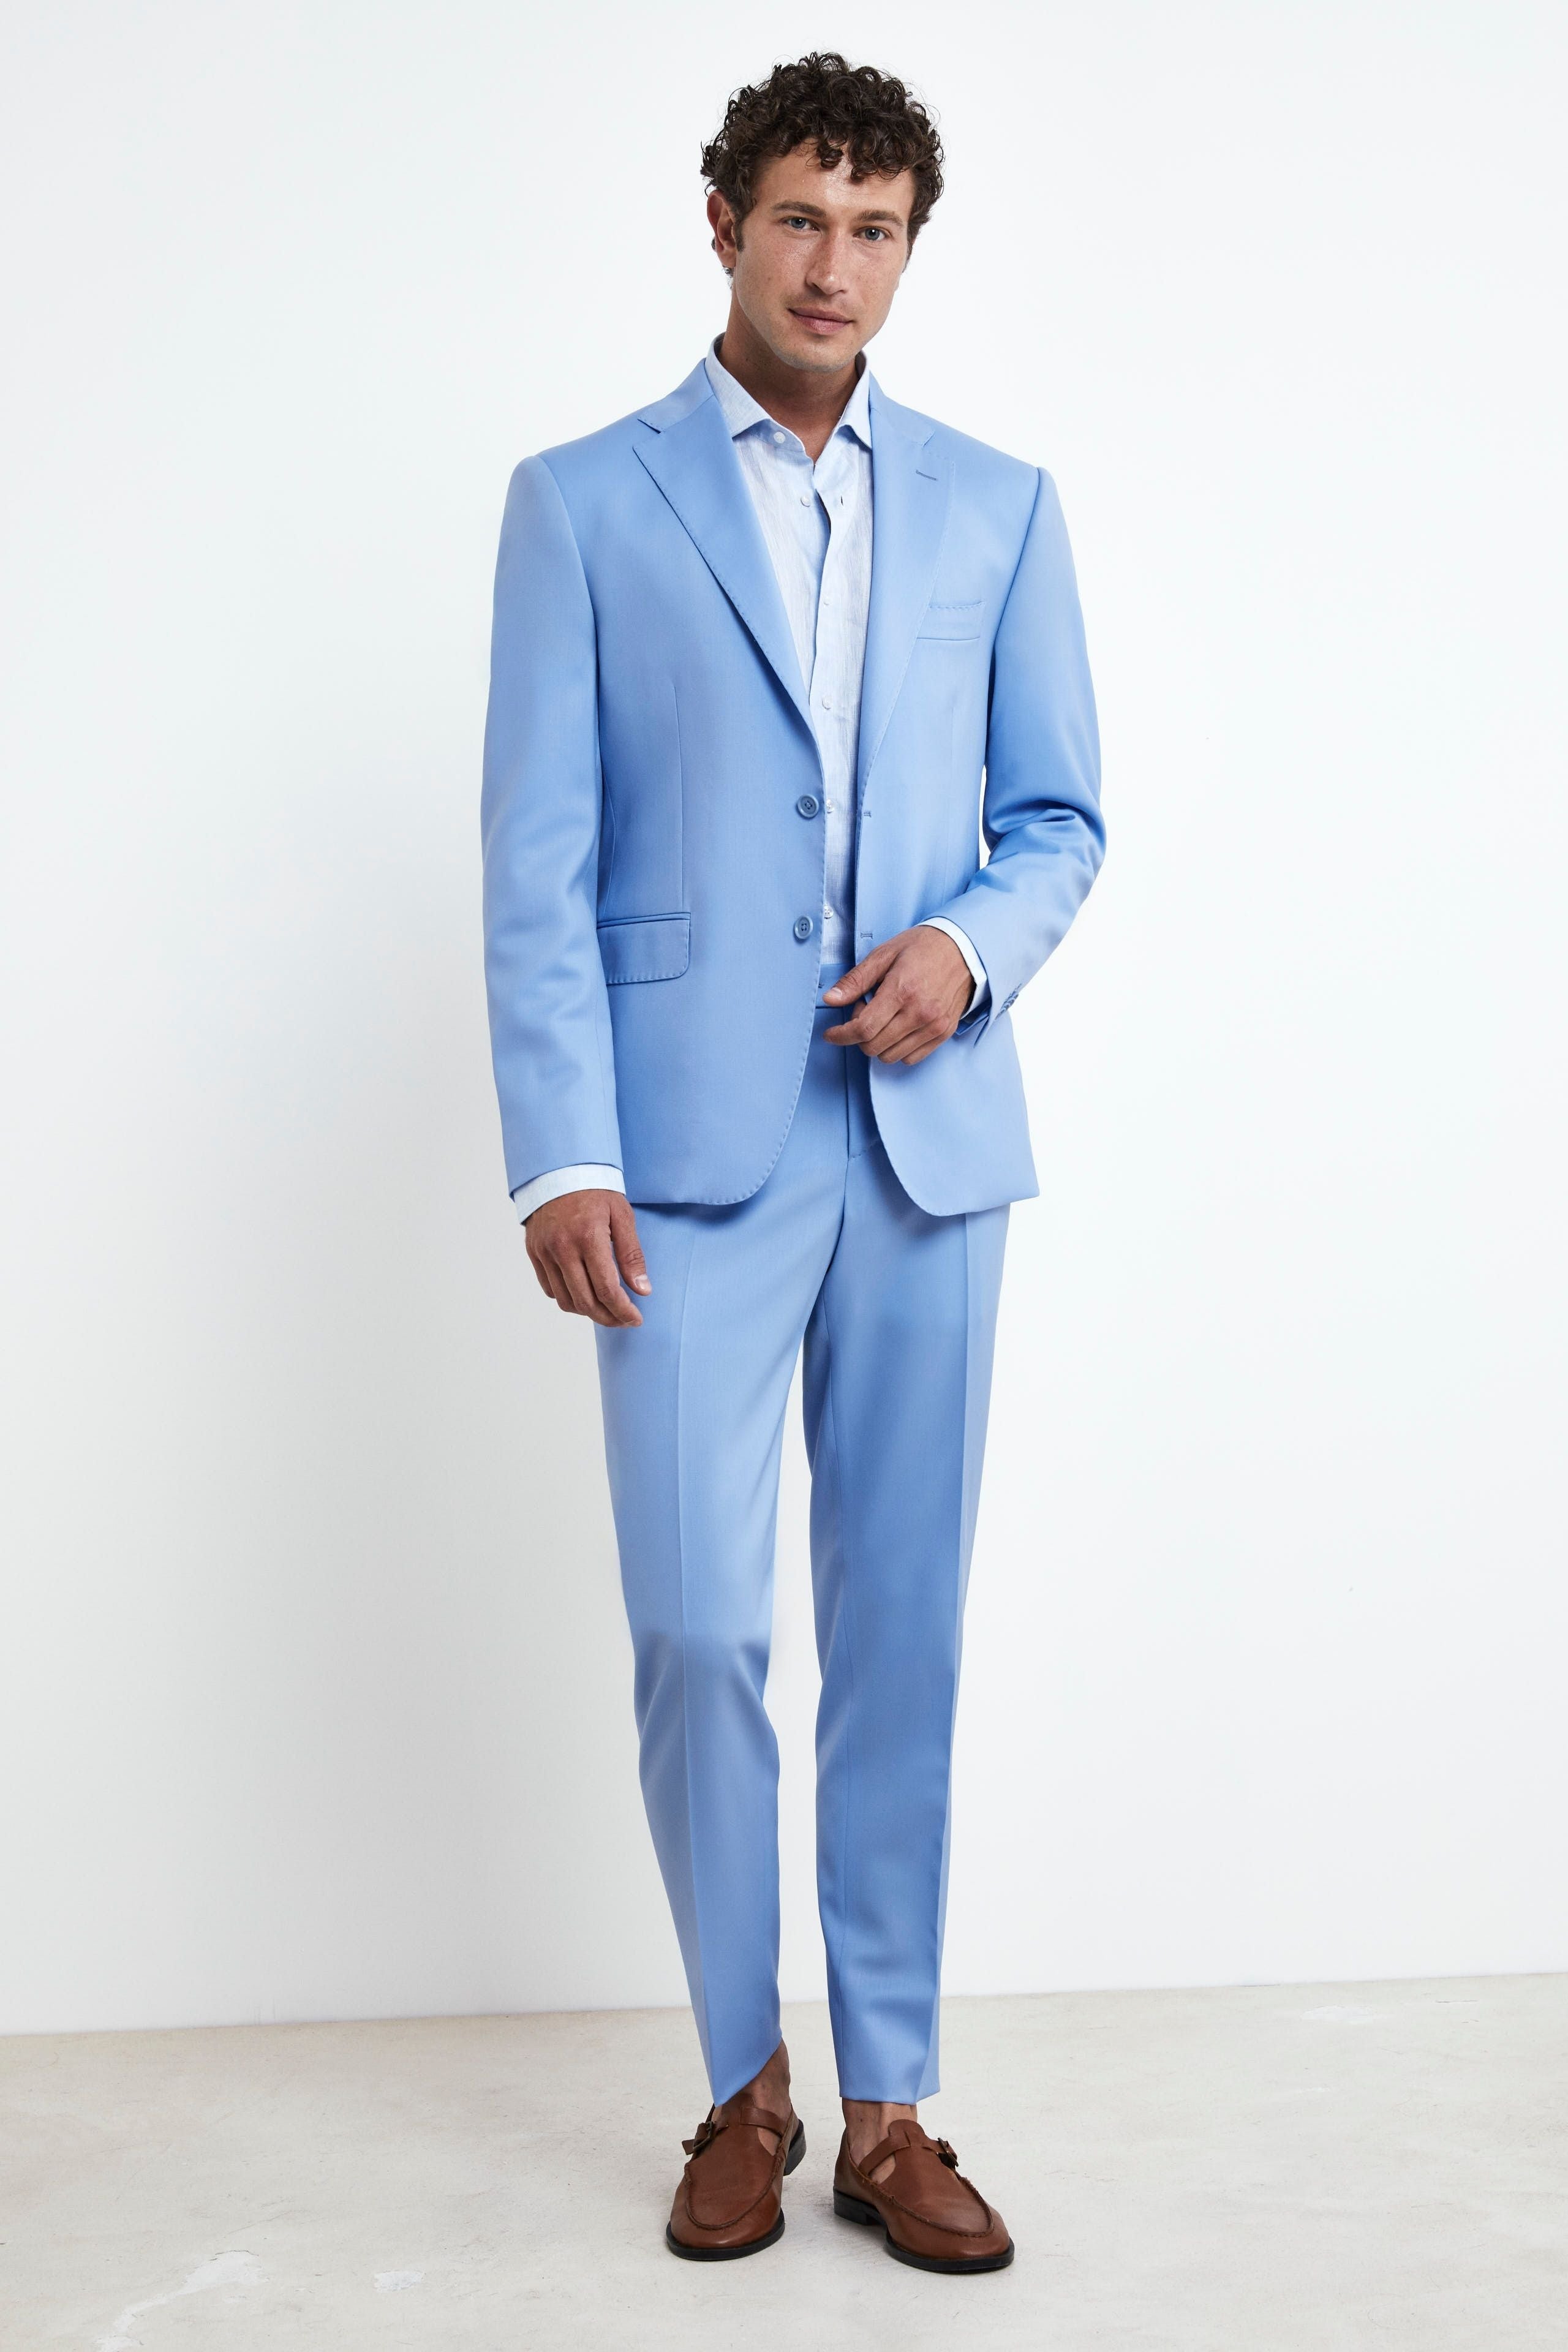 Structured Light Blue Suit - Light blue